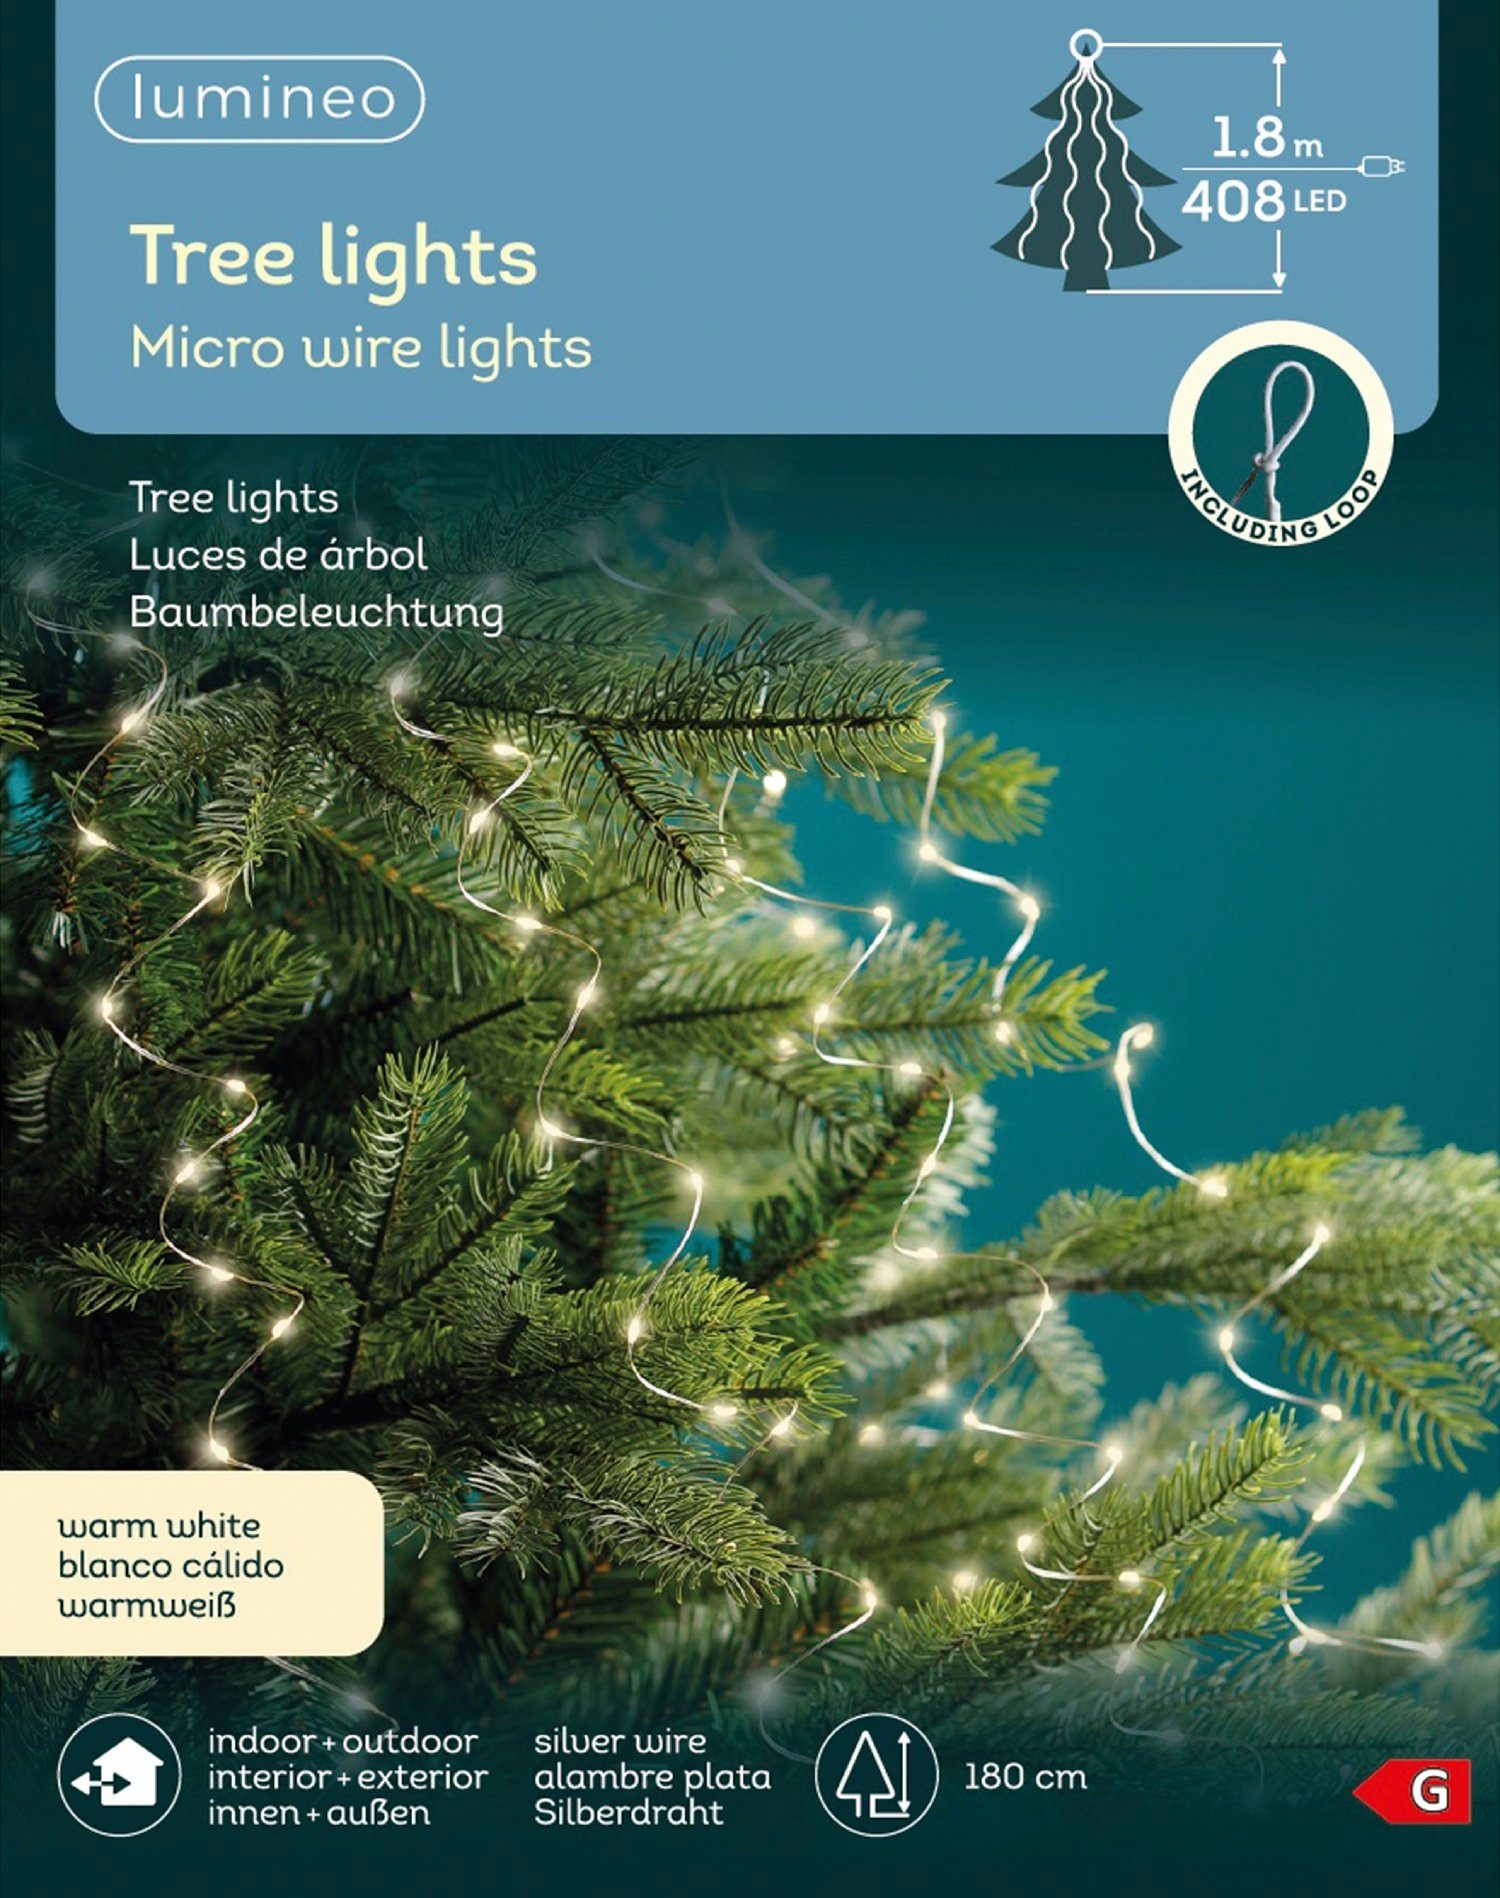 Lumineo LED-Lichterkette Lumineo Lichterkette Tree Lights 408 LED 1,8m warm  weiß, Silberdraht, 12 Lichtstränge, Indoor/Outdoor, 180 cm